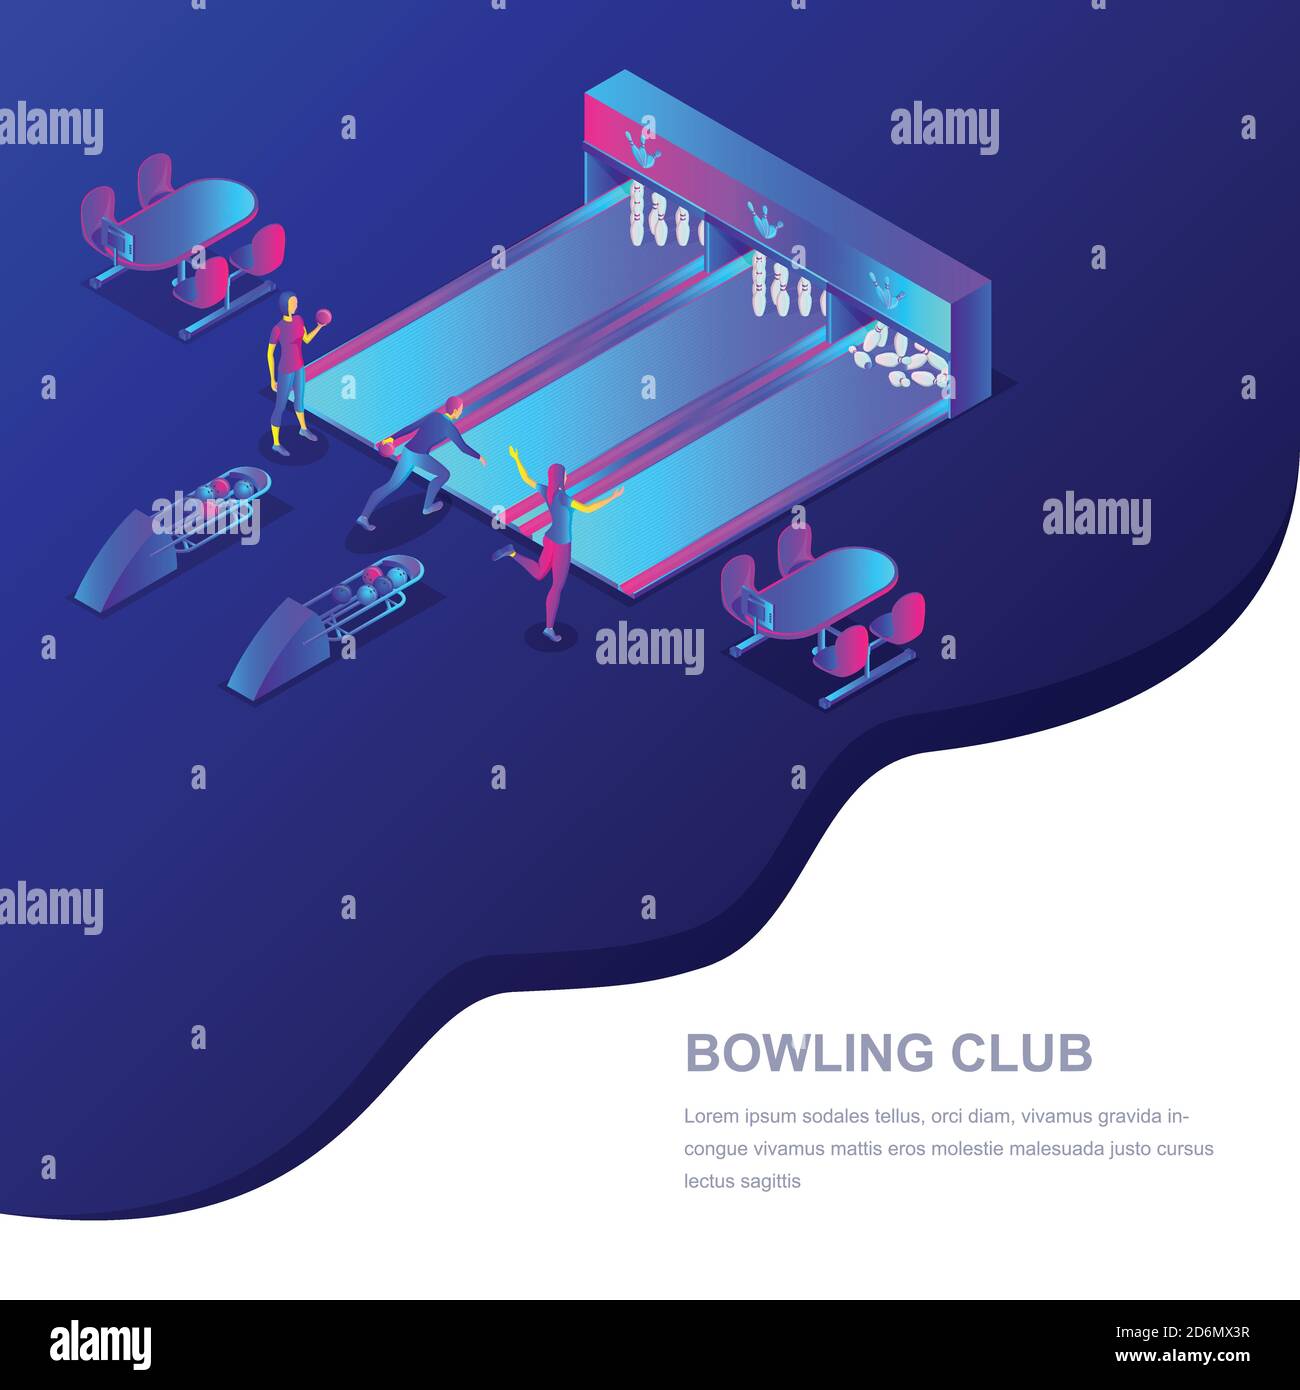 Bowling Club Vektor 3d isometrische Illustration. Menschen, die Bowling spielen. Konzept für Sportwettkämpfe und Freizeitaktivitäten. Trendige Farbverlauf Web-Bann Stock Vektor